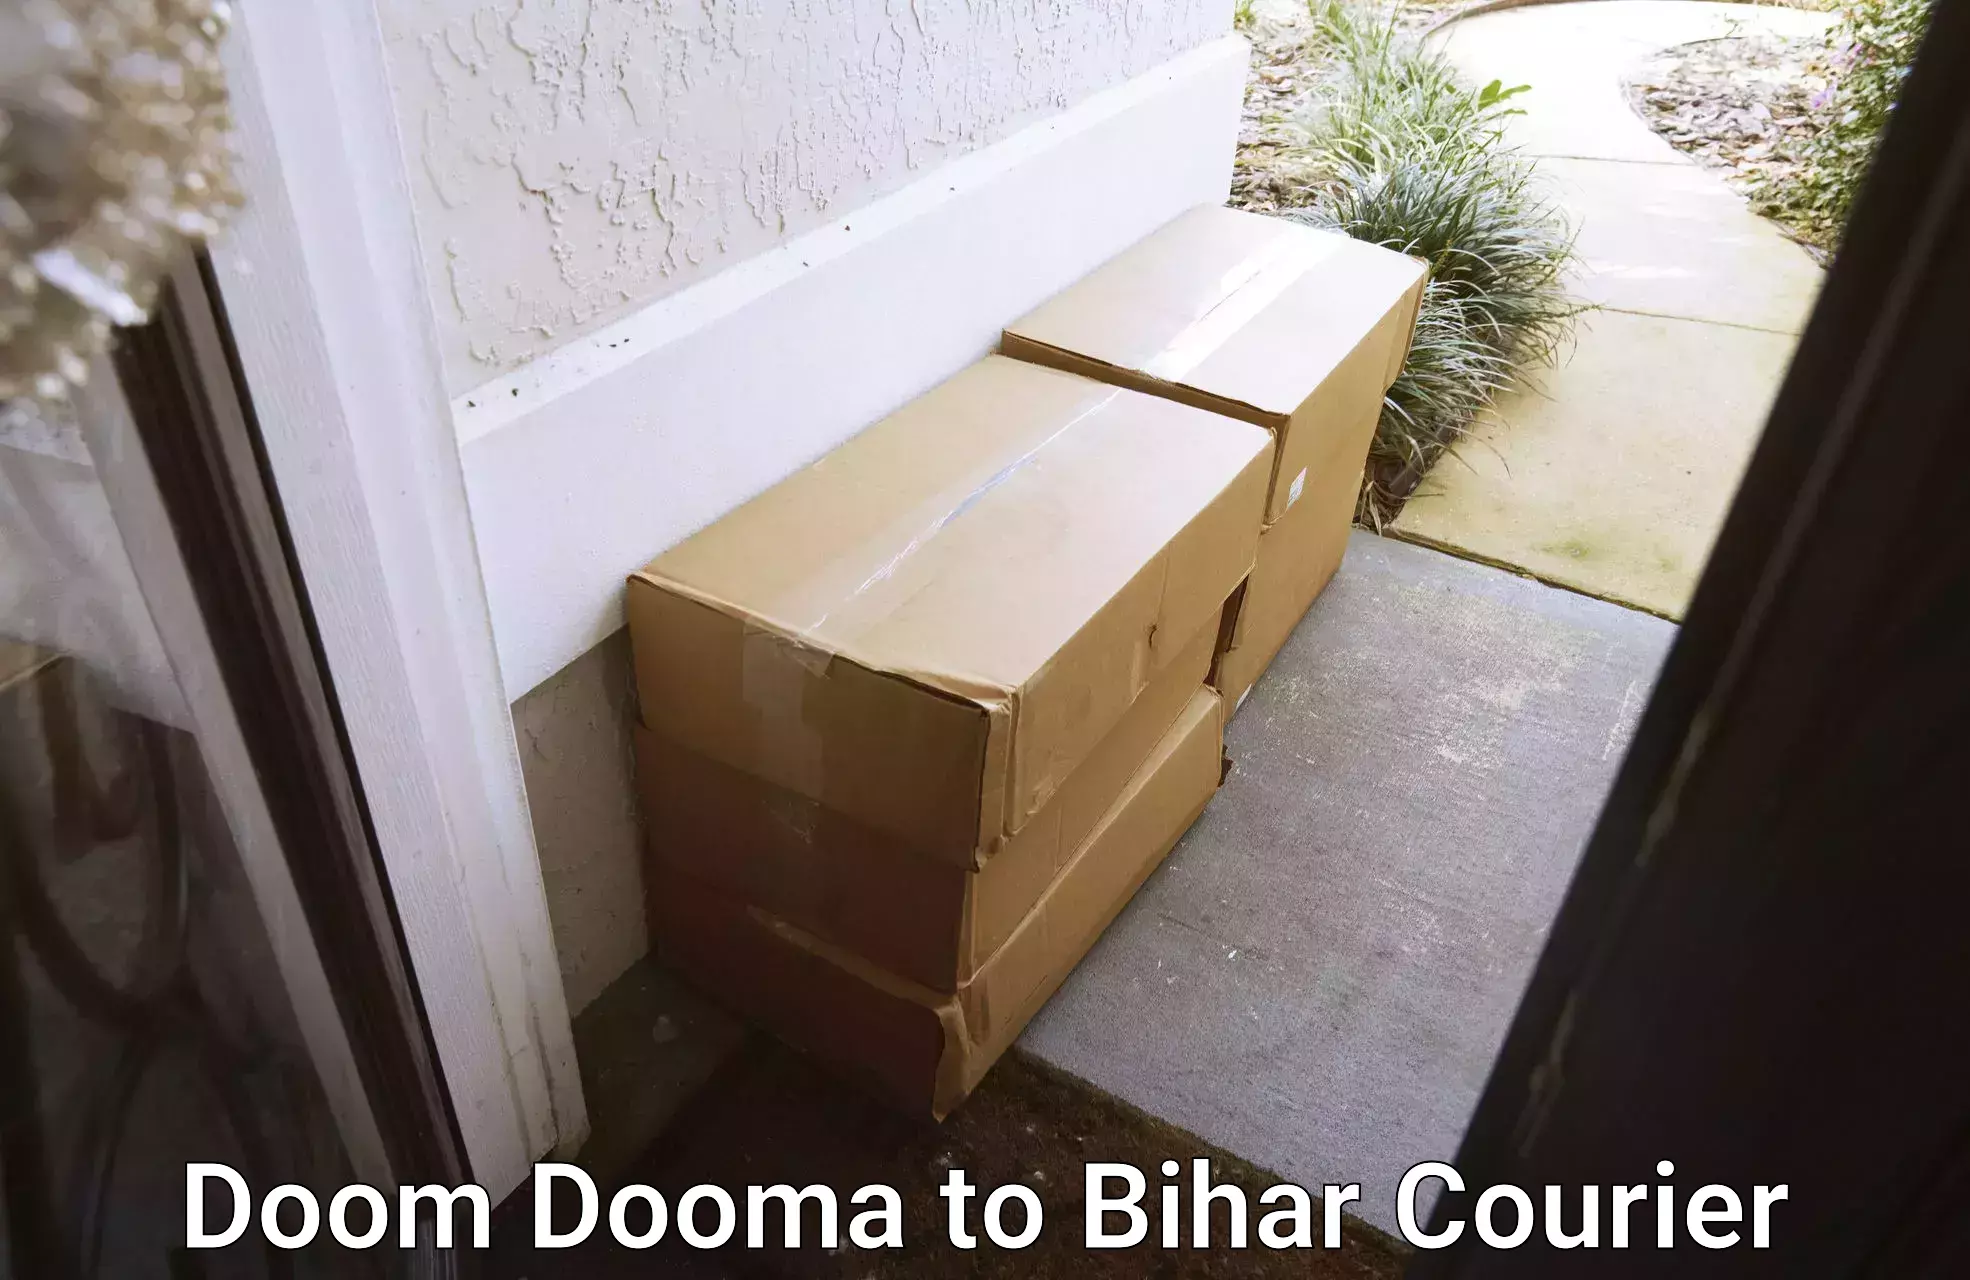 Premium courier services in Doom Dooma to Mashrakh